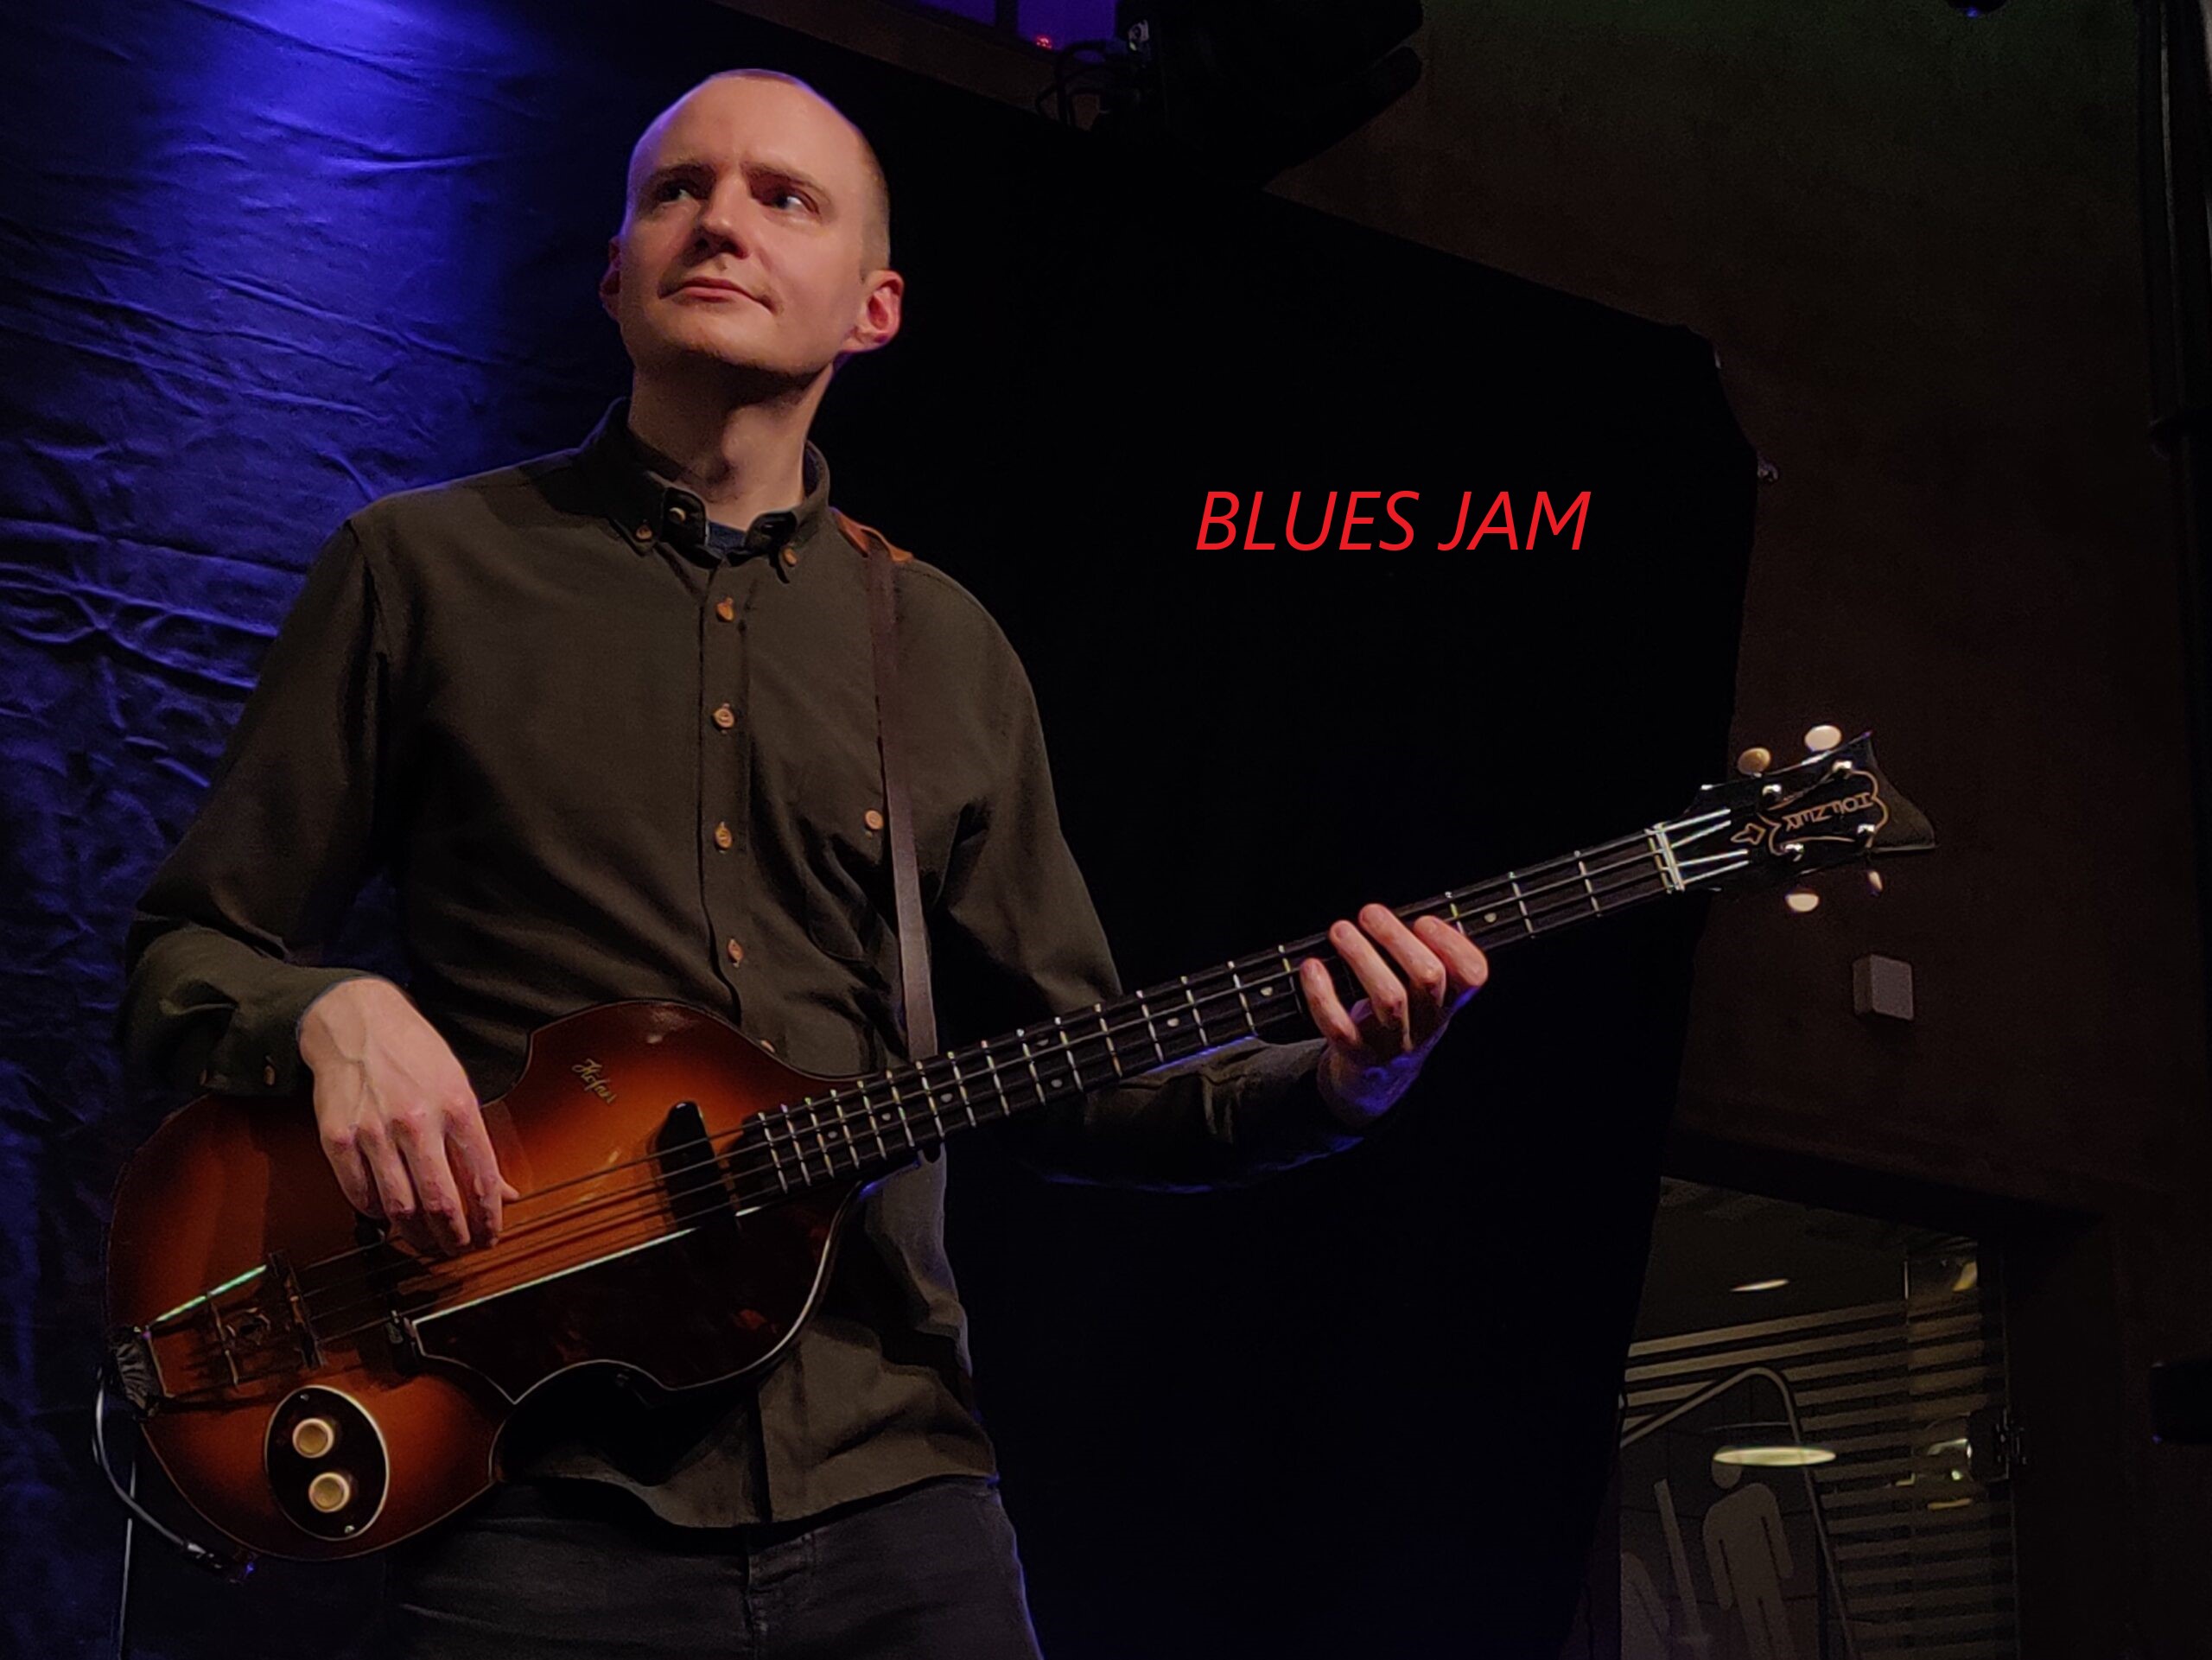 Blues Jam ved Hans Knudsen, Marc Chain, Laust Krudtmejer og Carsten Milner.

